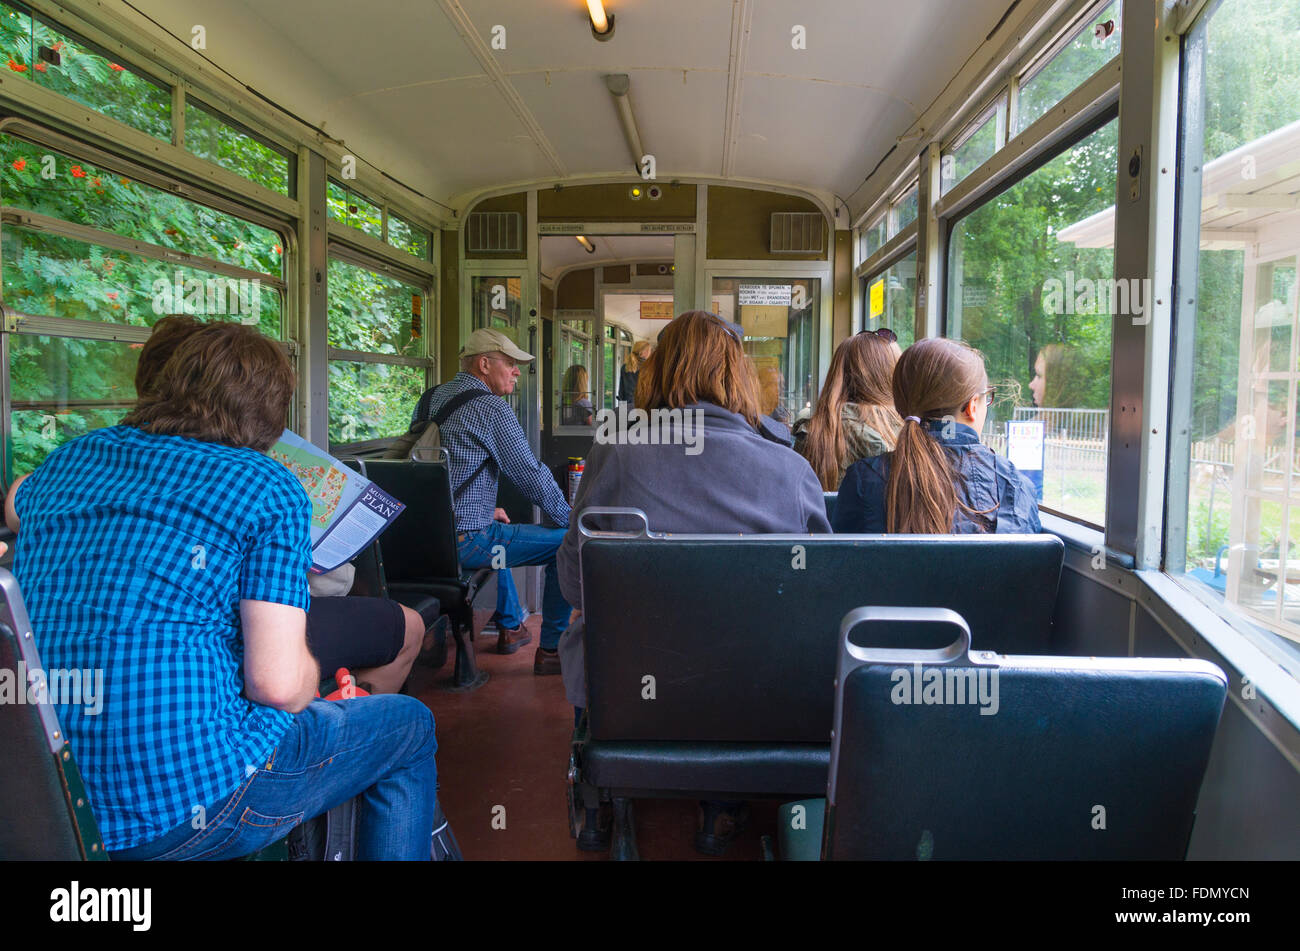 ARNHEM, Niederlande - 26. Juli 2015: Unbekannte Menschen in einer antiken Straßenbahn in den Niederlanden Open-Air-Museum. Das Museum zeigt die Stockfoto